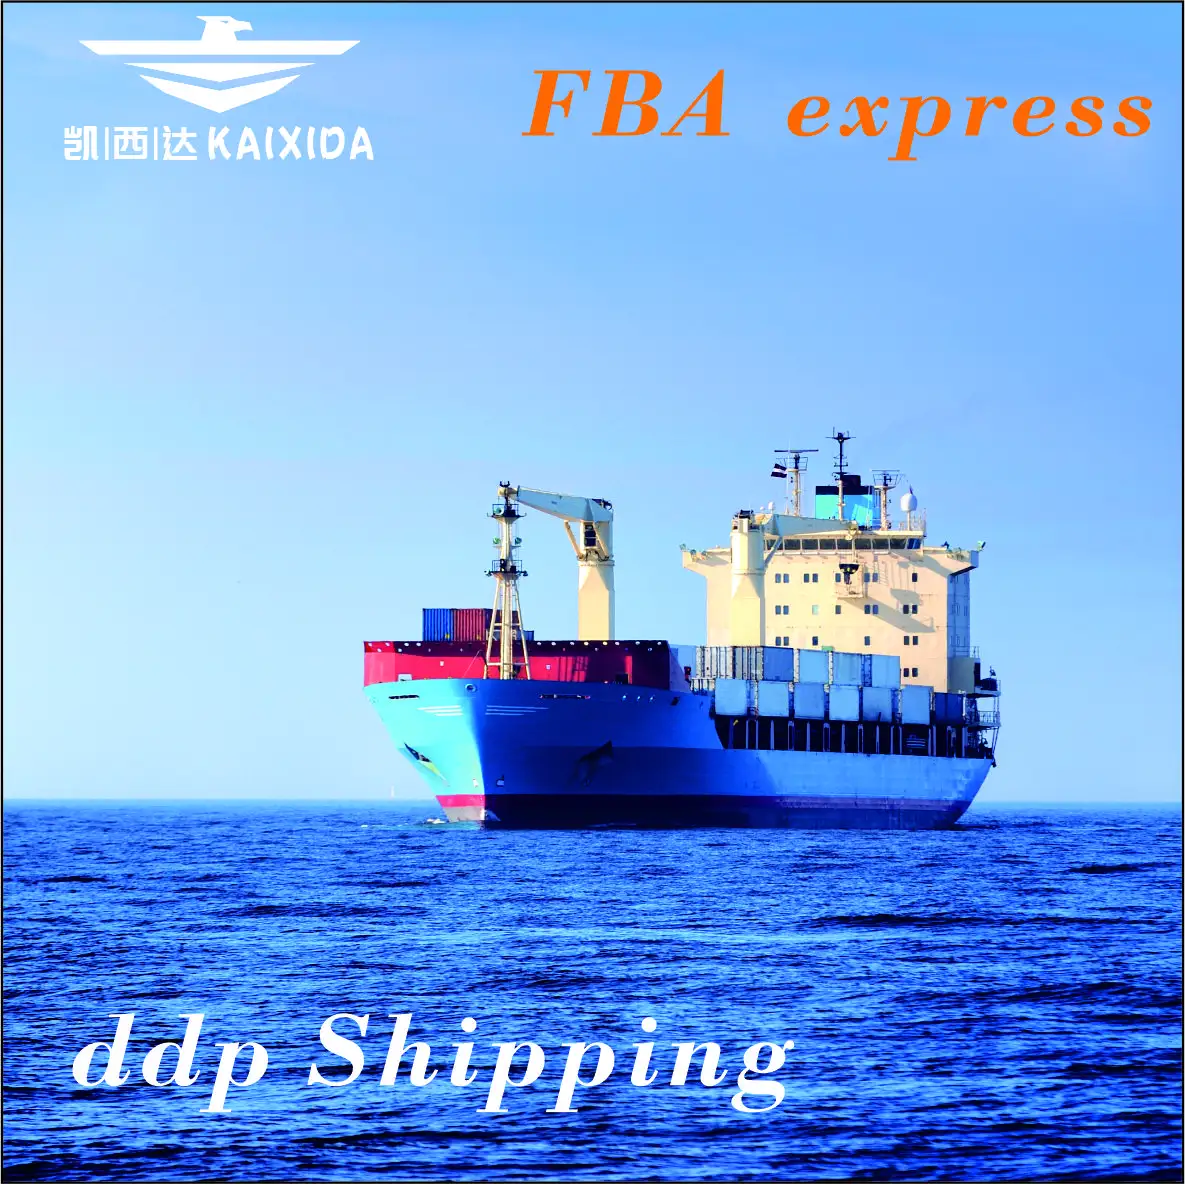 Transporte marítimo de China a Pakistán, envío de tarifas de carga, logística mundial